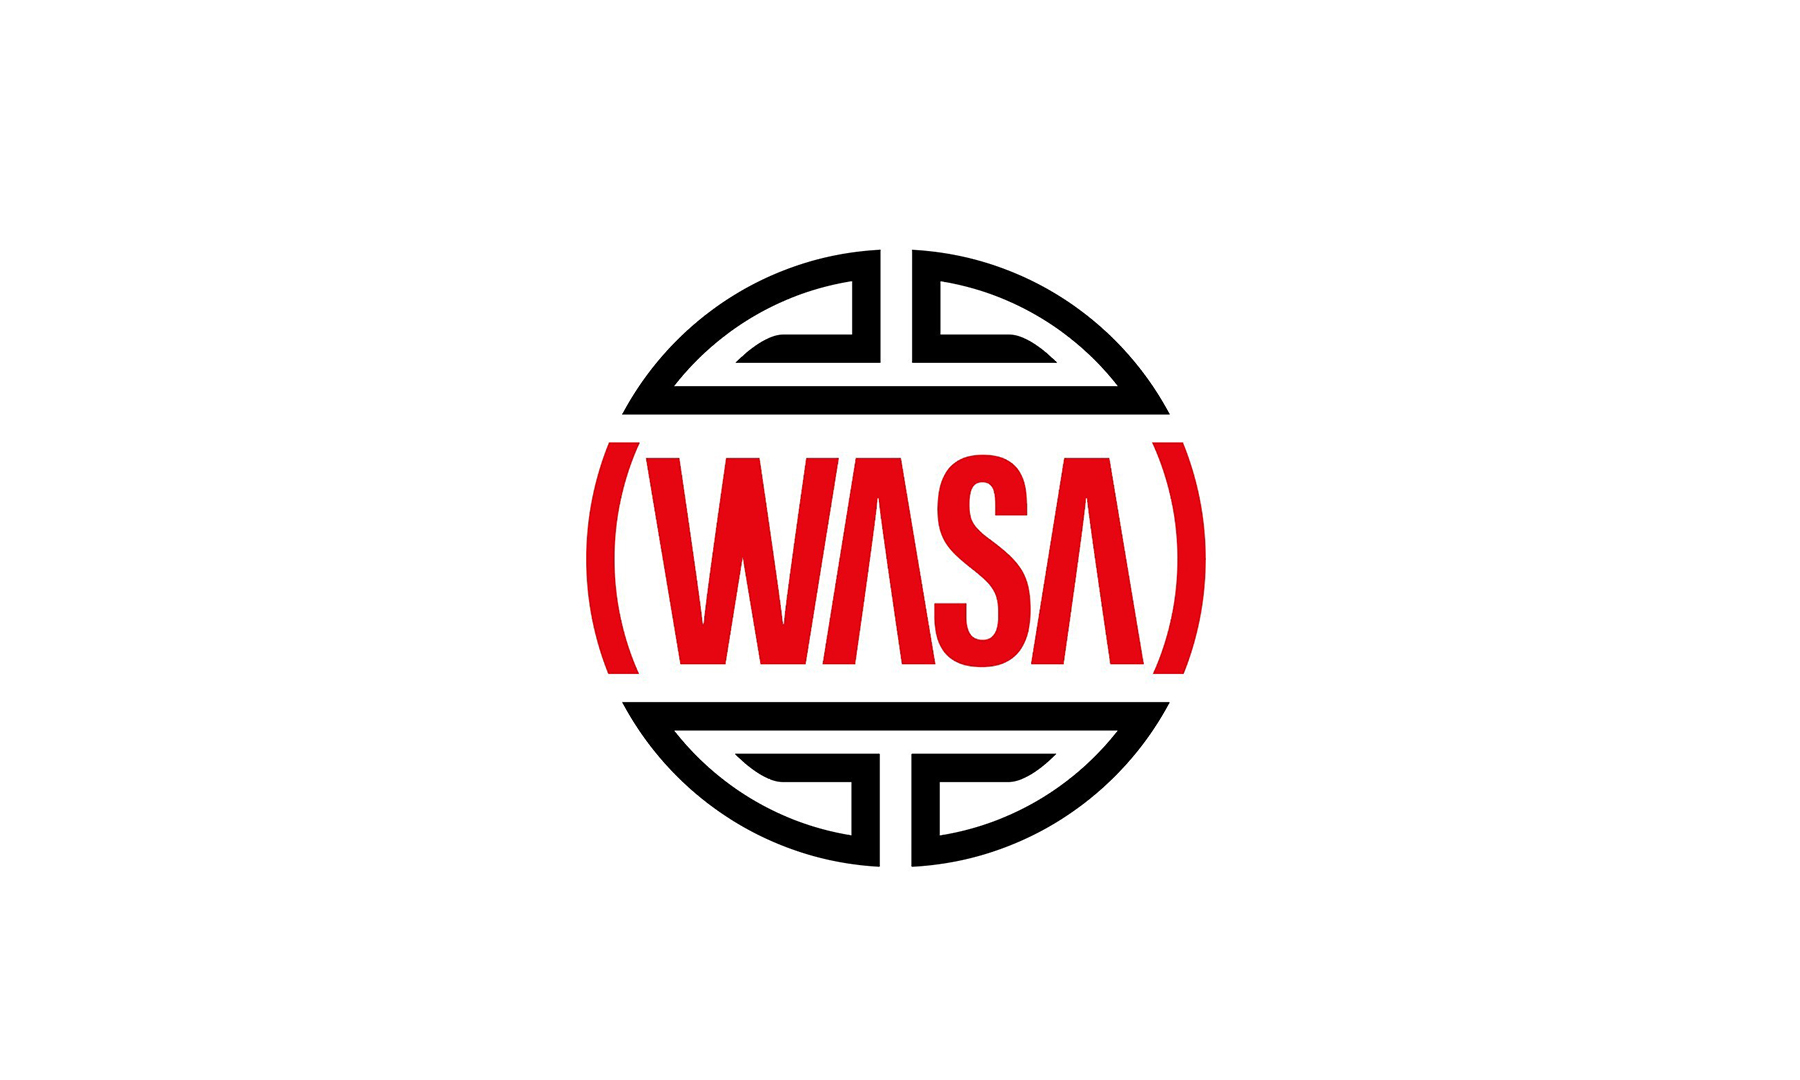 Wasa's image